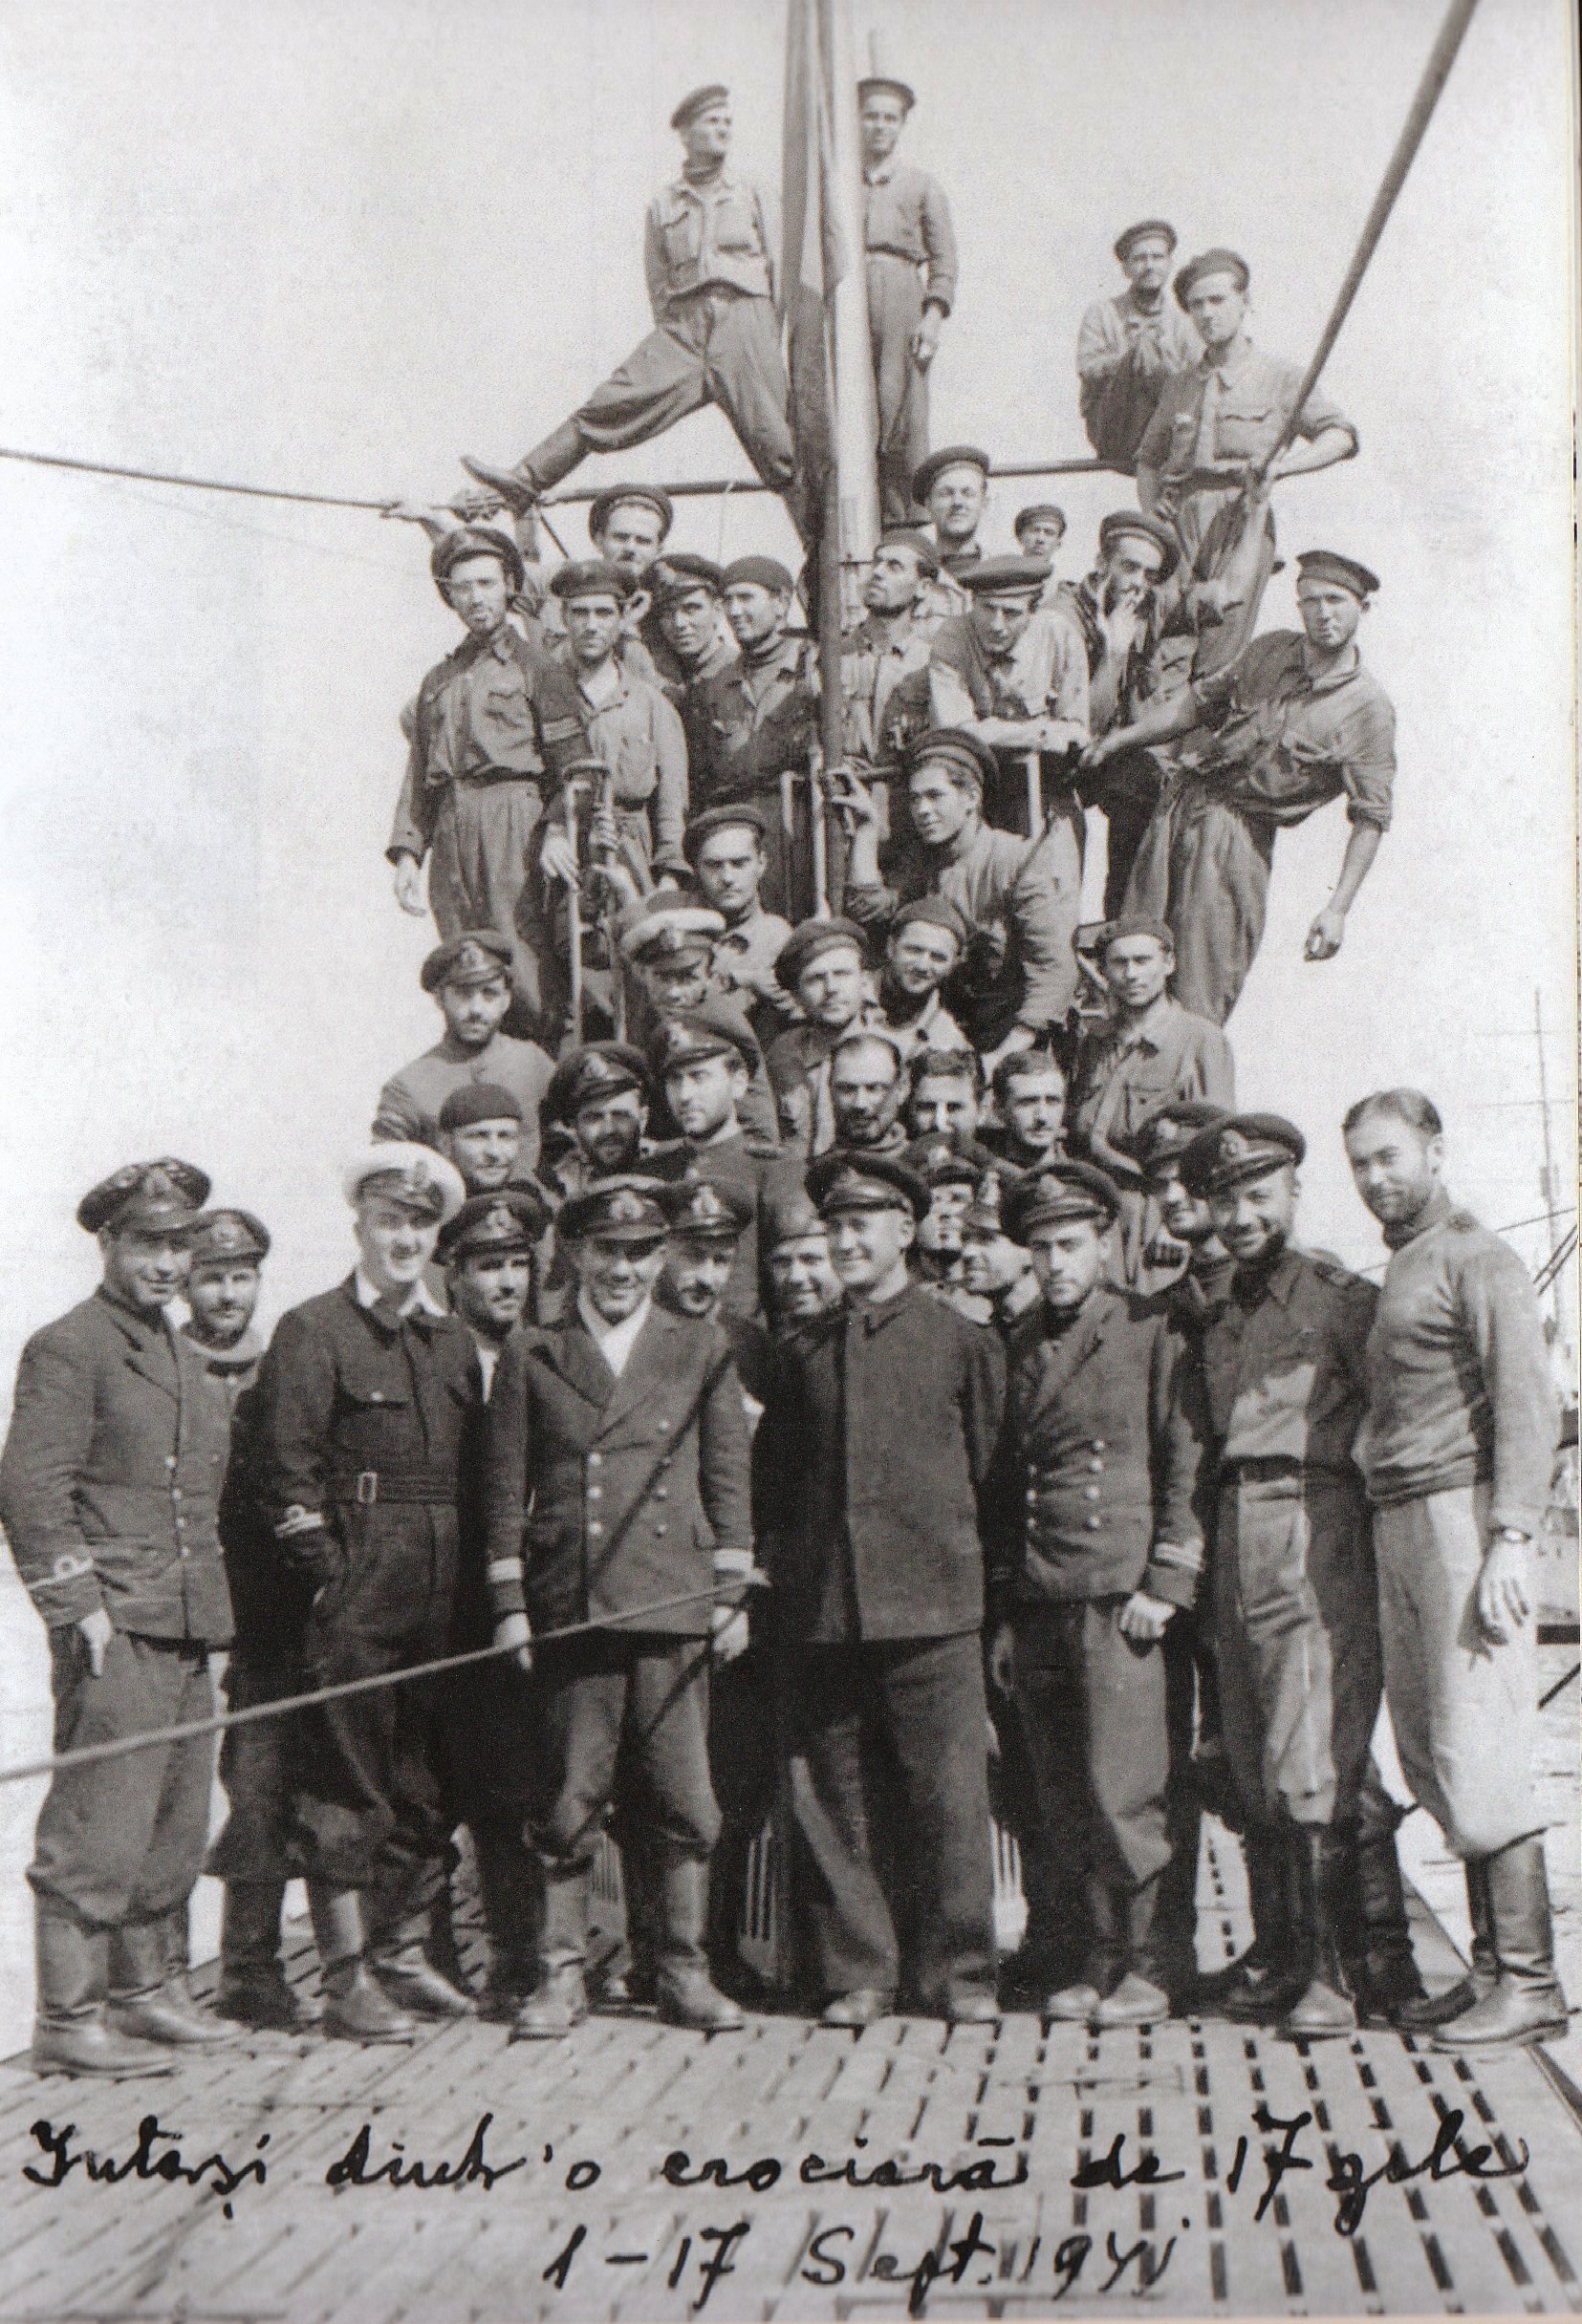 Echipajul-submarinului-DELFINUL-revenit-dintr-o-cruciada-de-17-zile-1-17-sept.1941-Copy.jpg